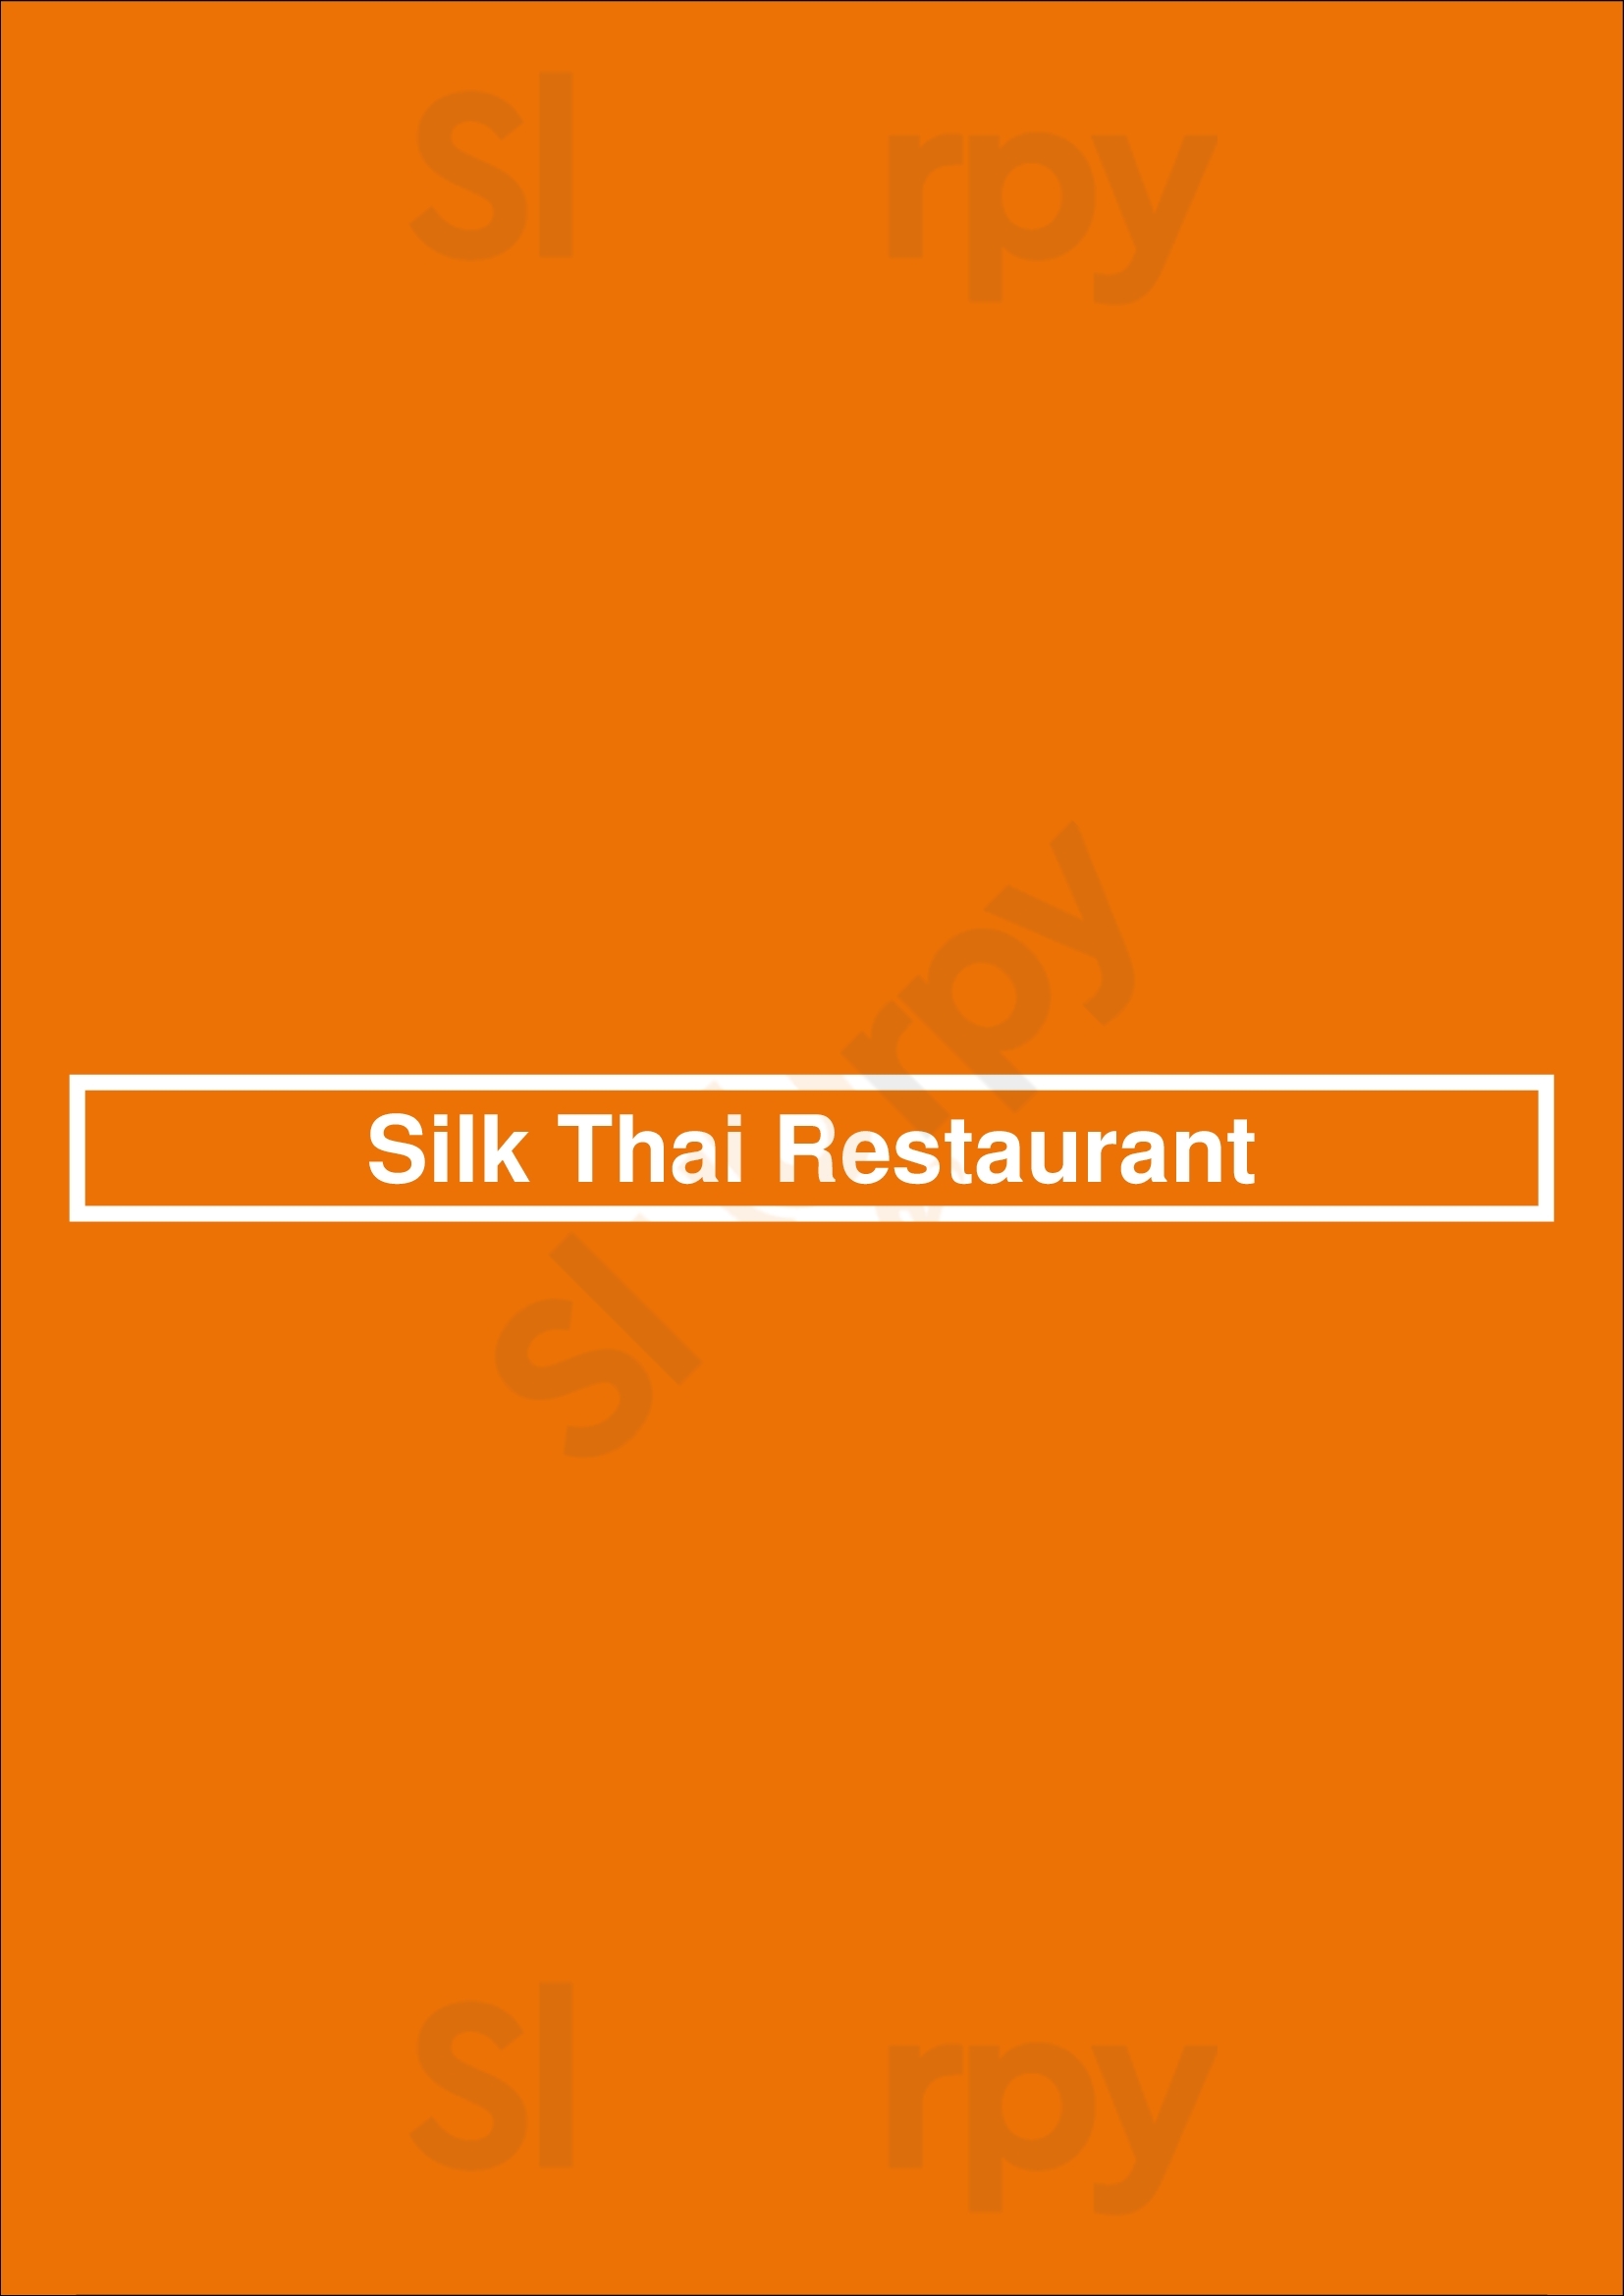 Silk Thai Restaurant Mandurah Menu - 1